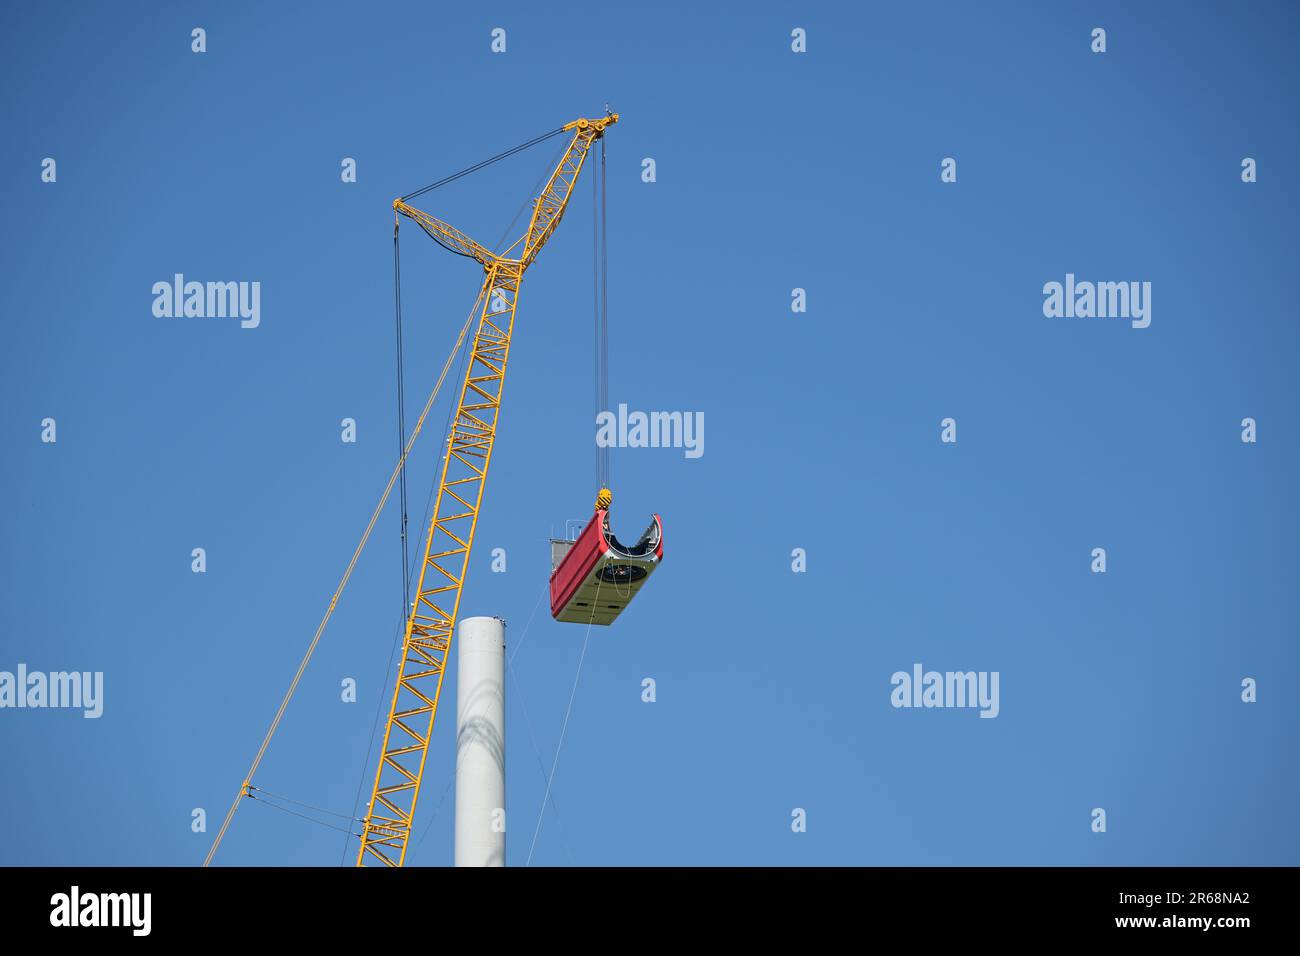 Kran, der die Gondel hebt, um sie auf dem Turm einer Windturbine auf einer Baustelle zu installieren, Elektrizität, erneuerbare Energien und Stromkonzept, blau Stockfoto